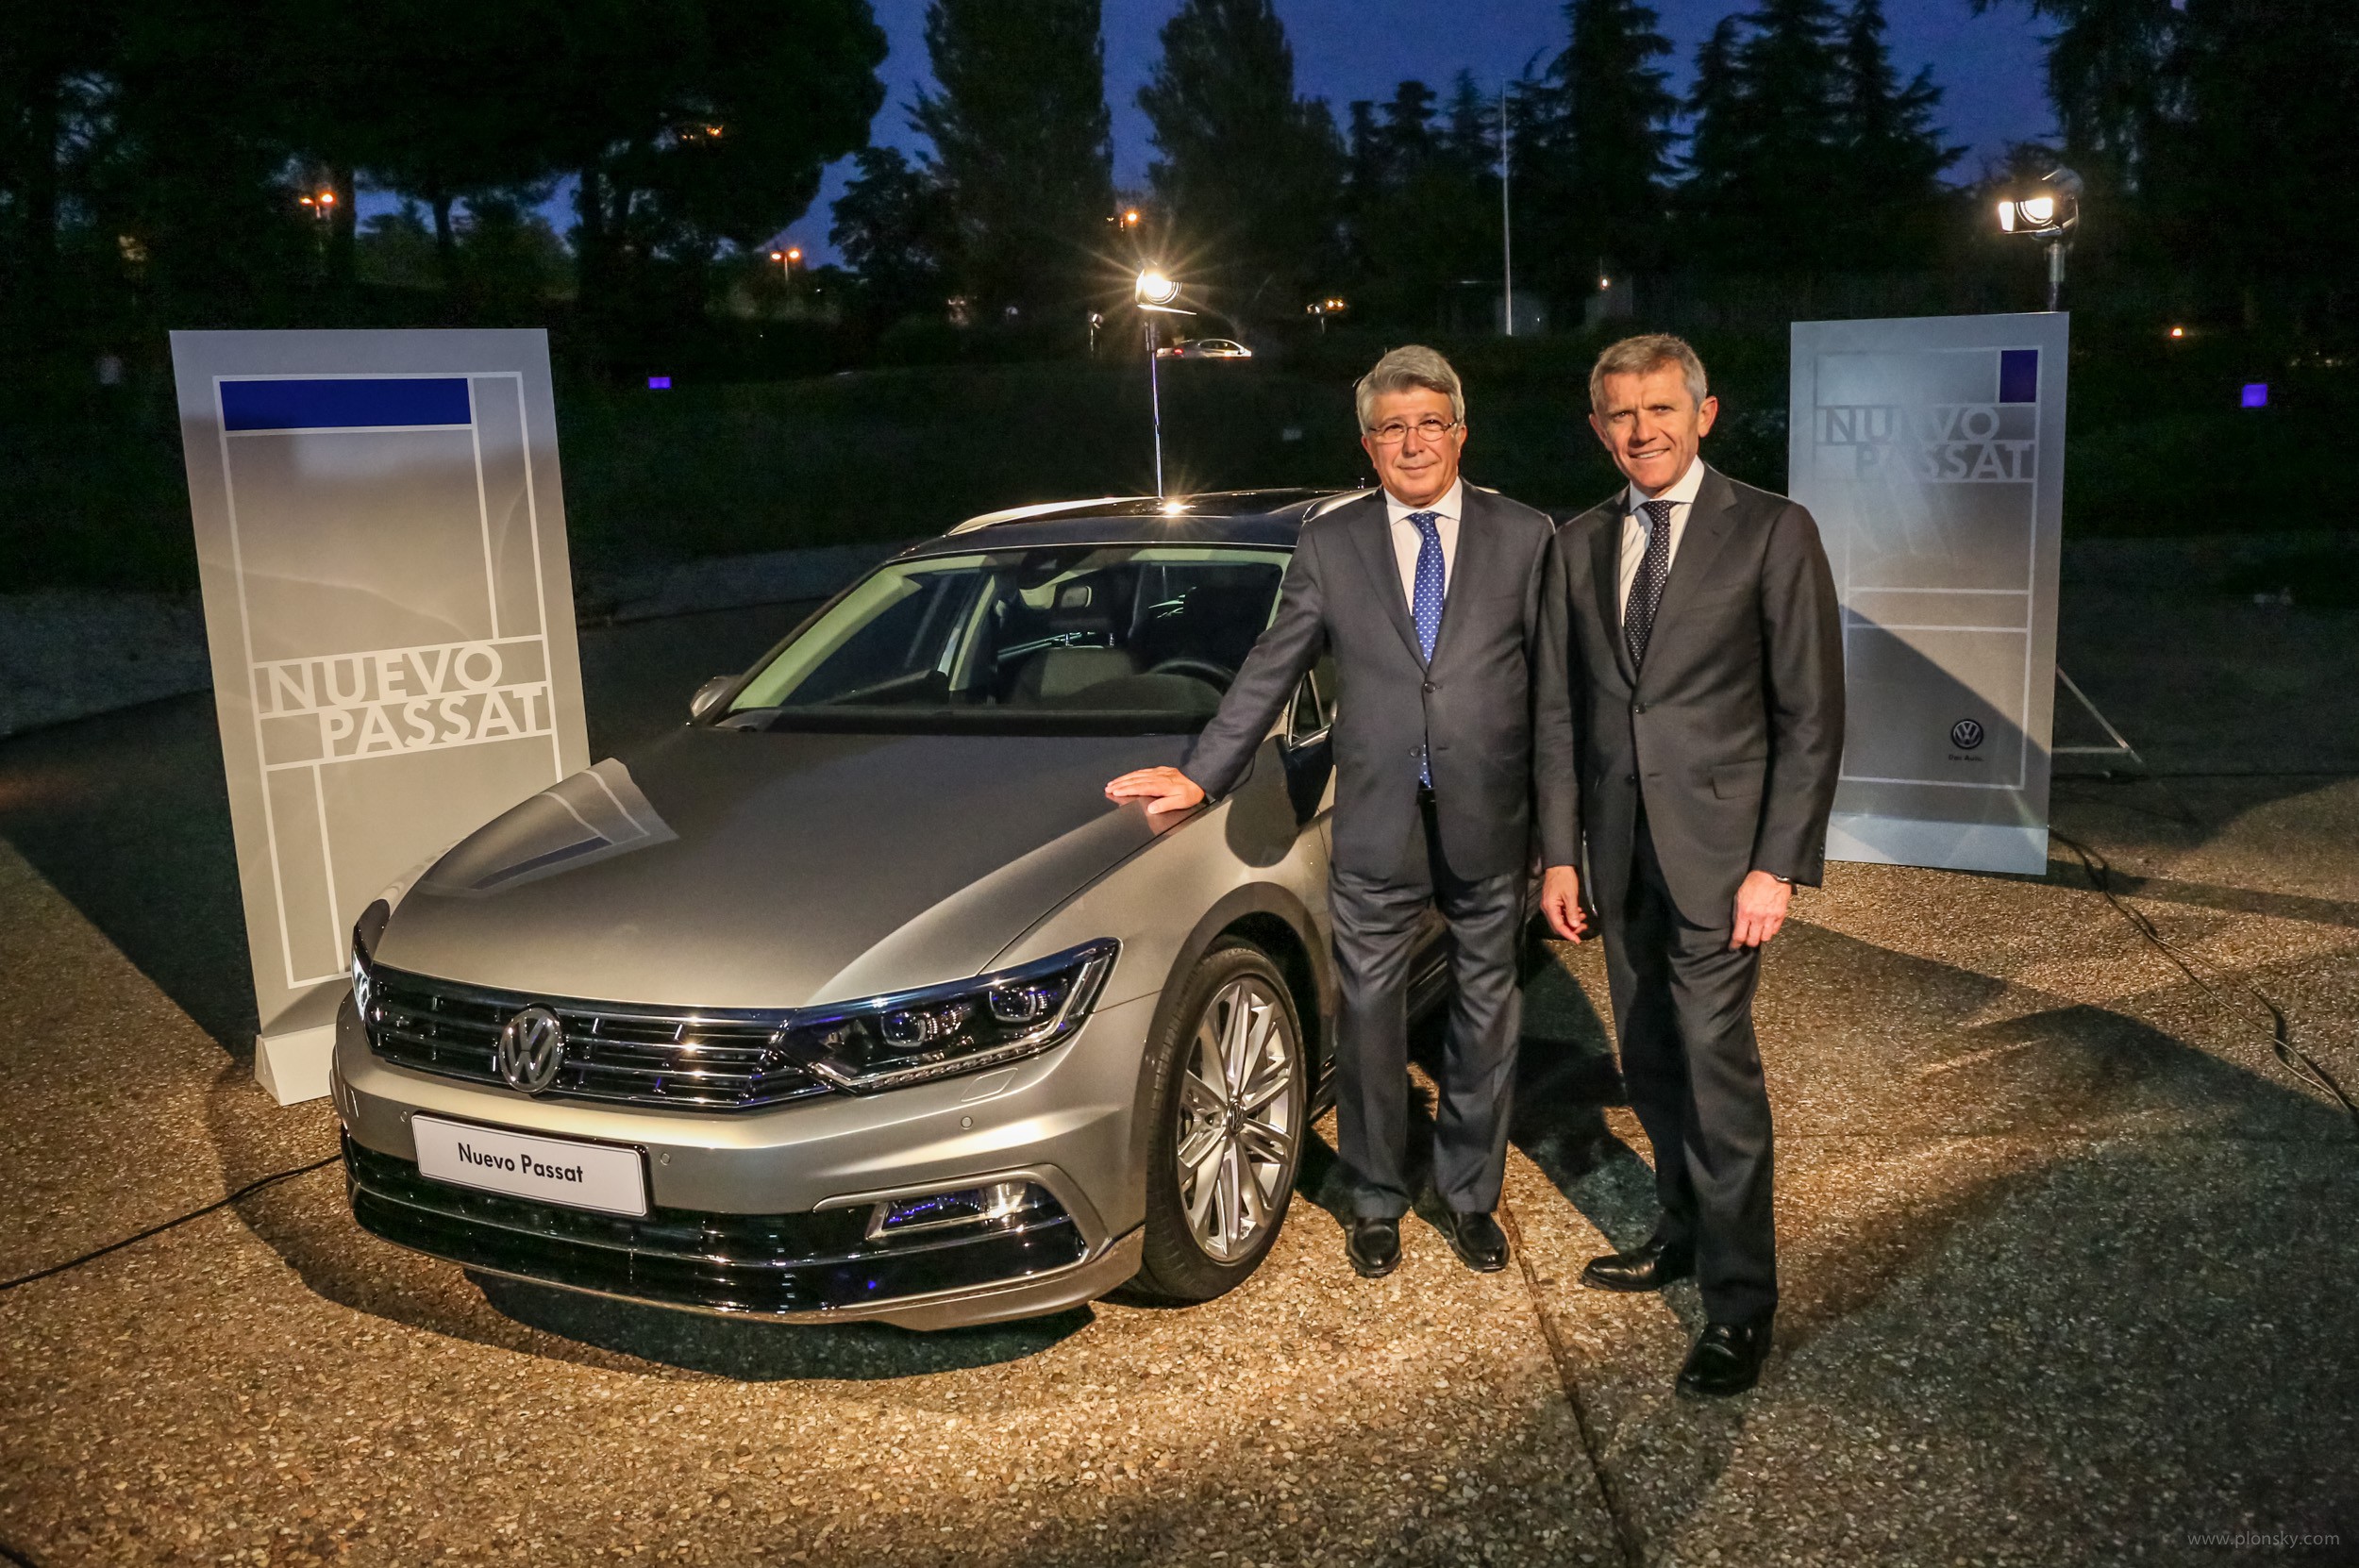 El nuevo Volkswagen Passat hace su debut en España